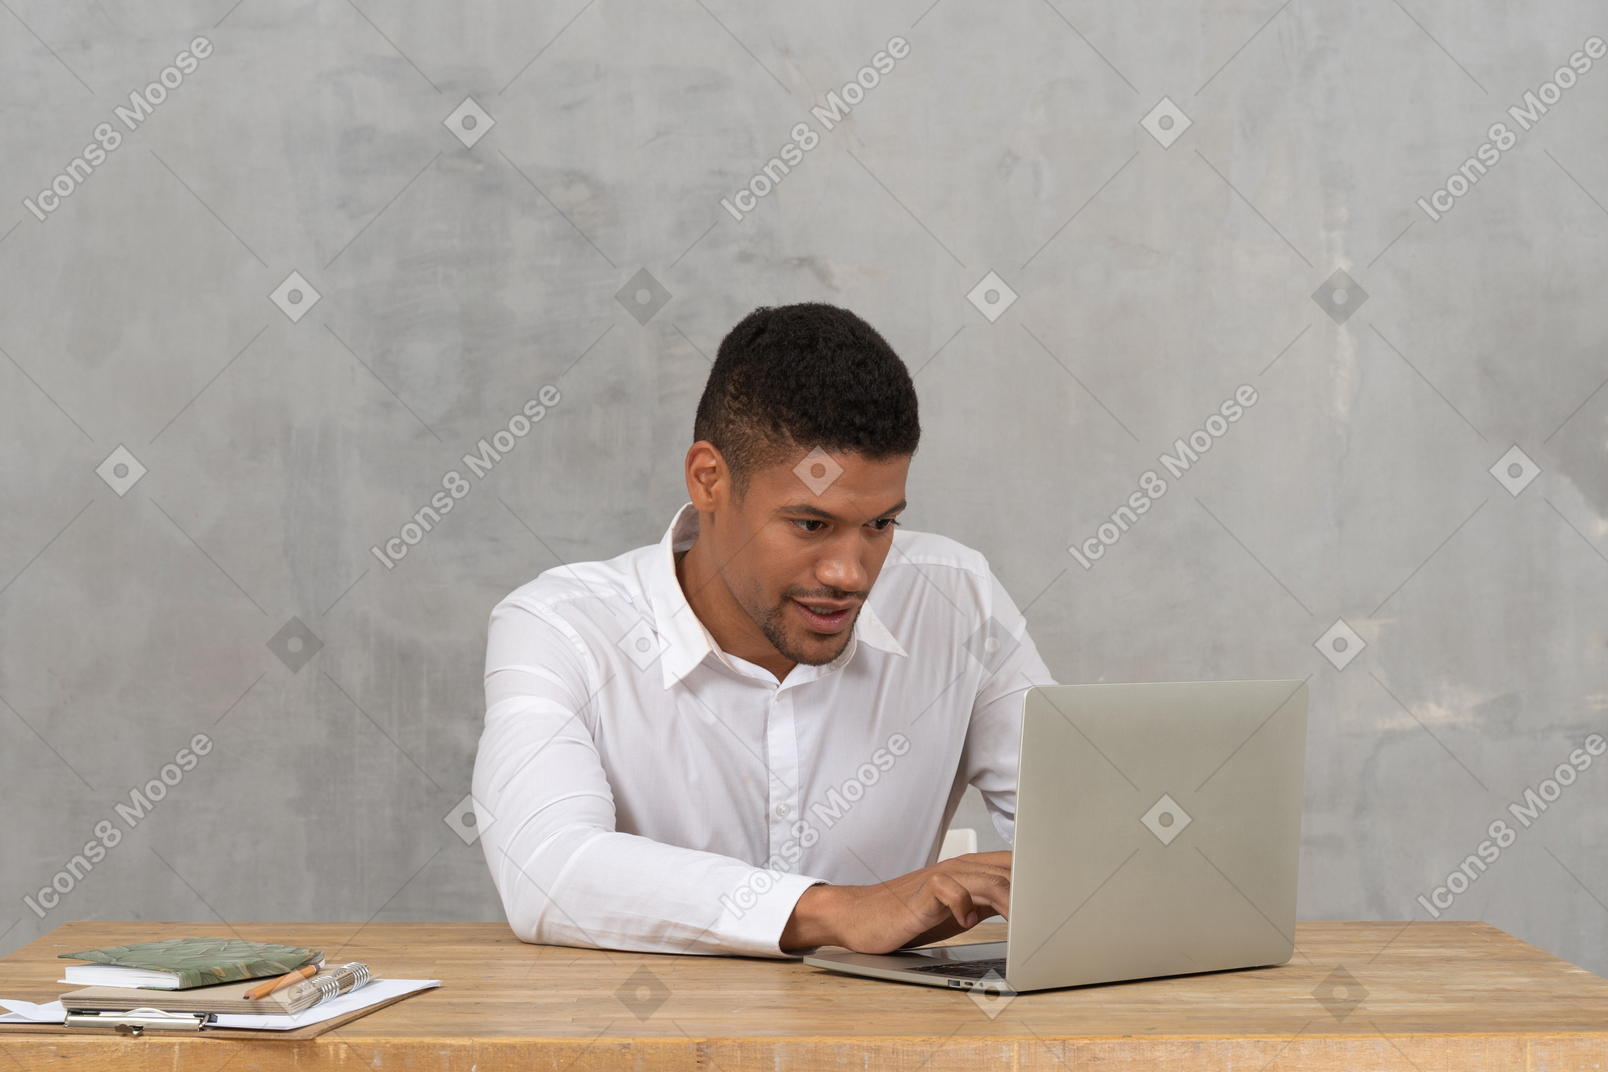 Man typing